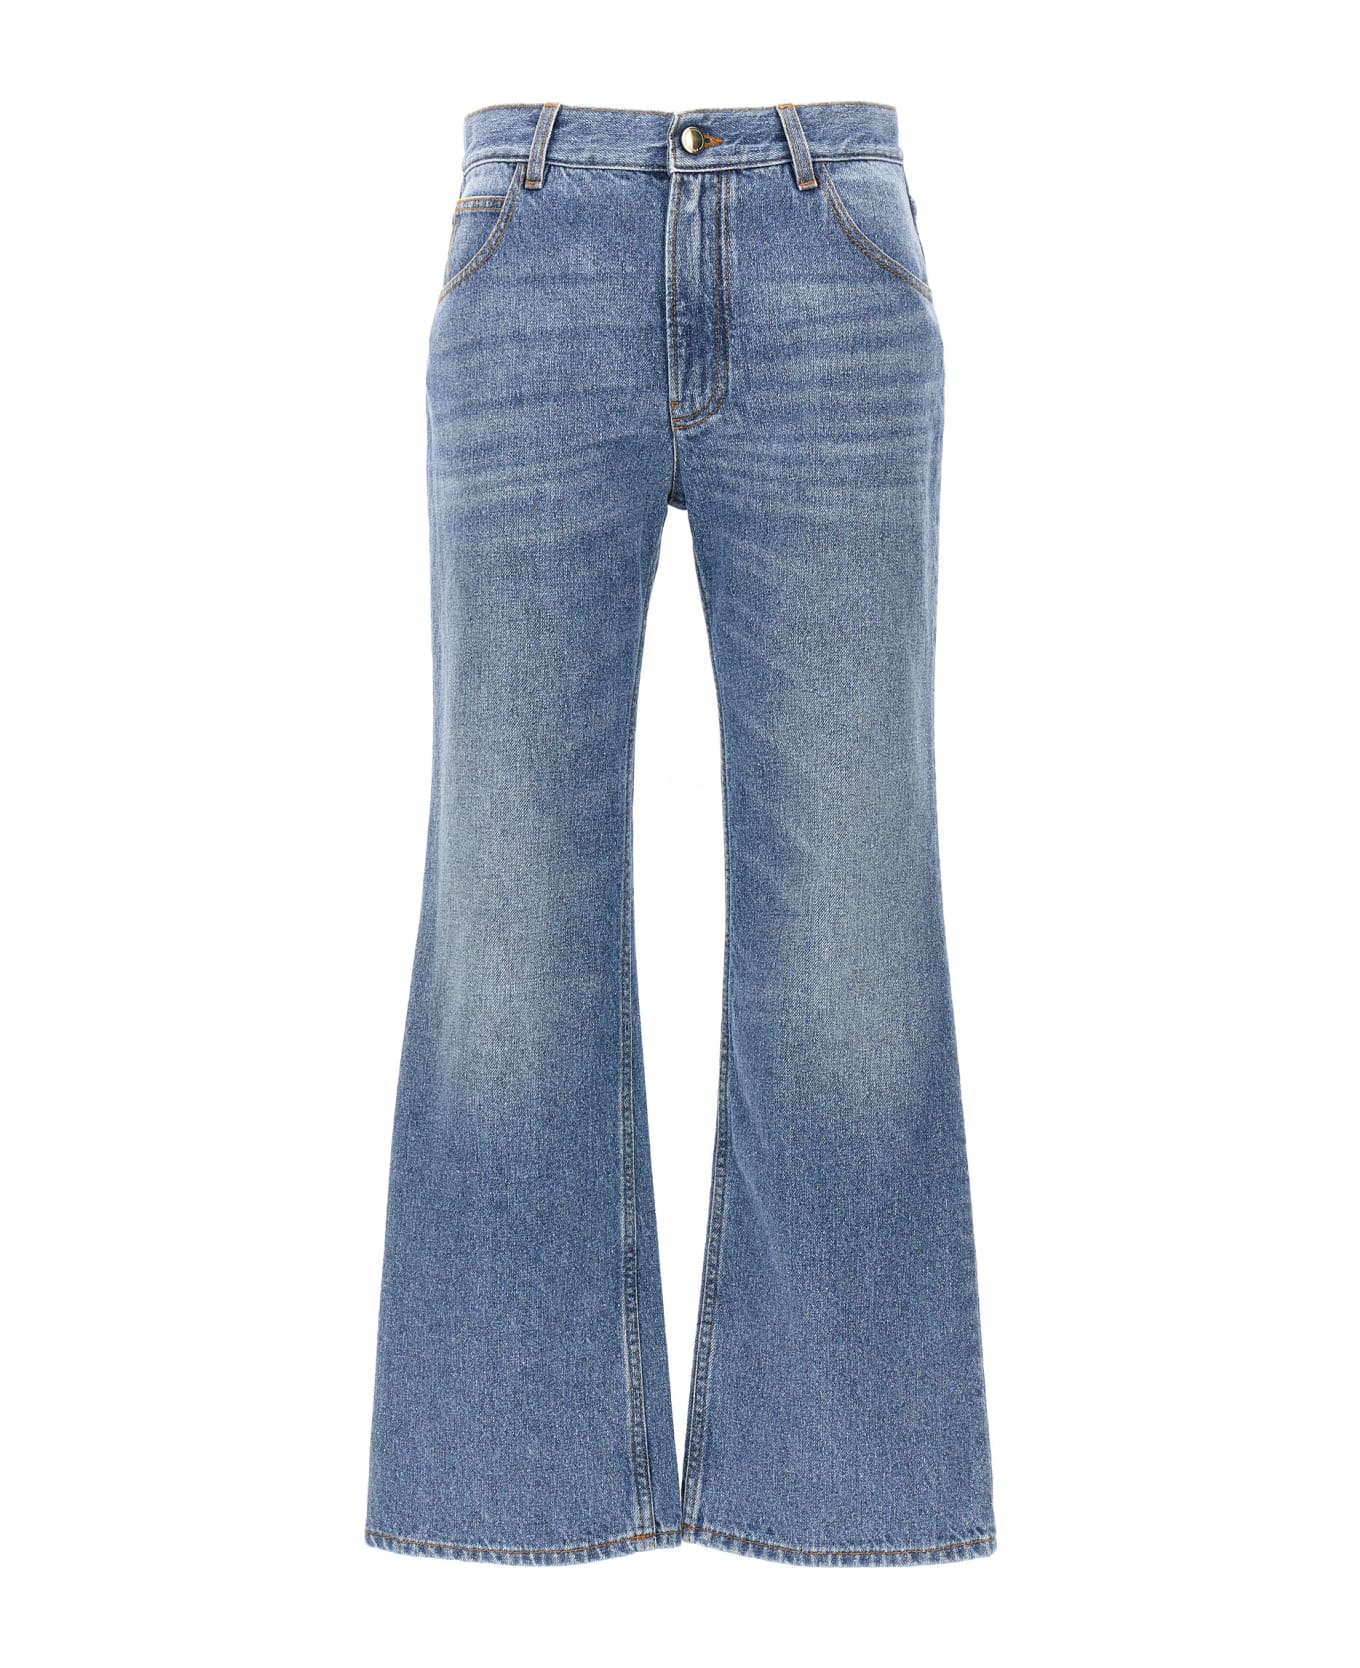 Chloé Denim Cropped Cut Jeans - Light Blue